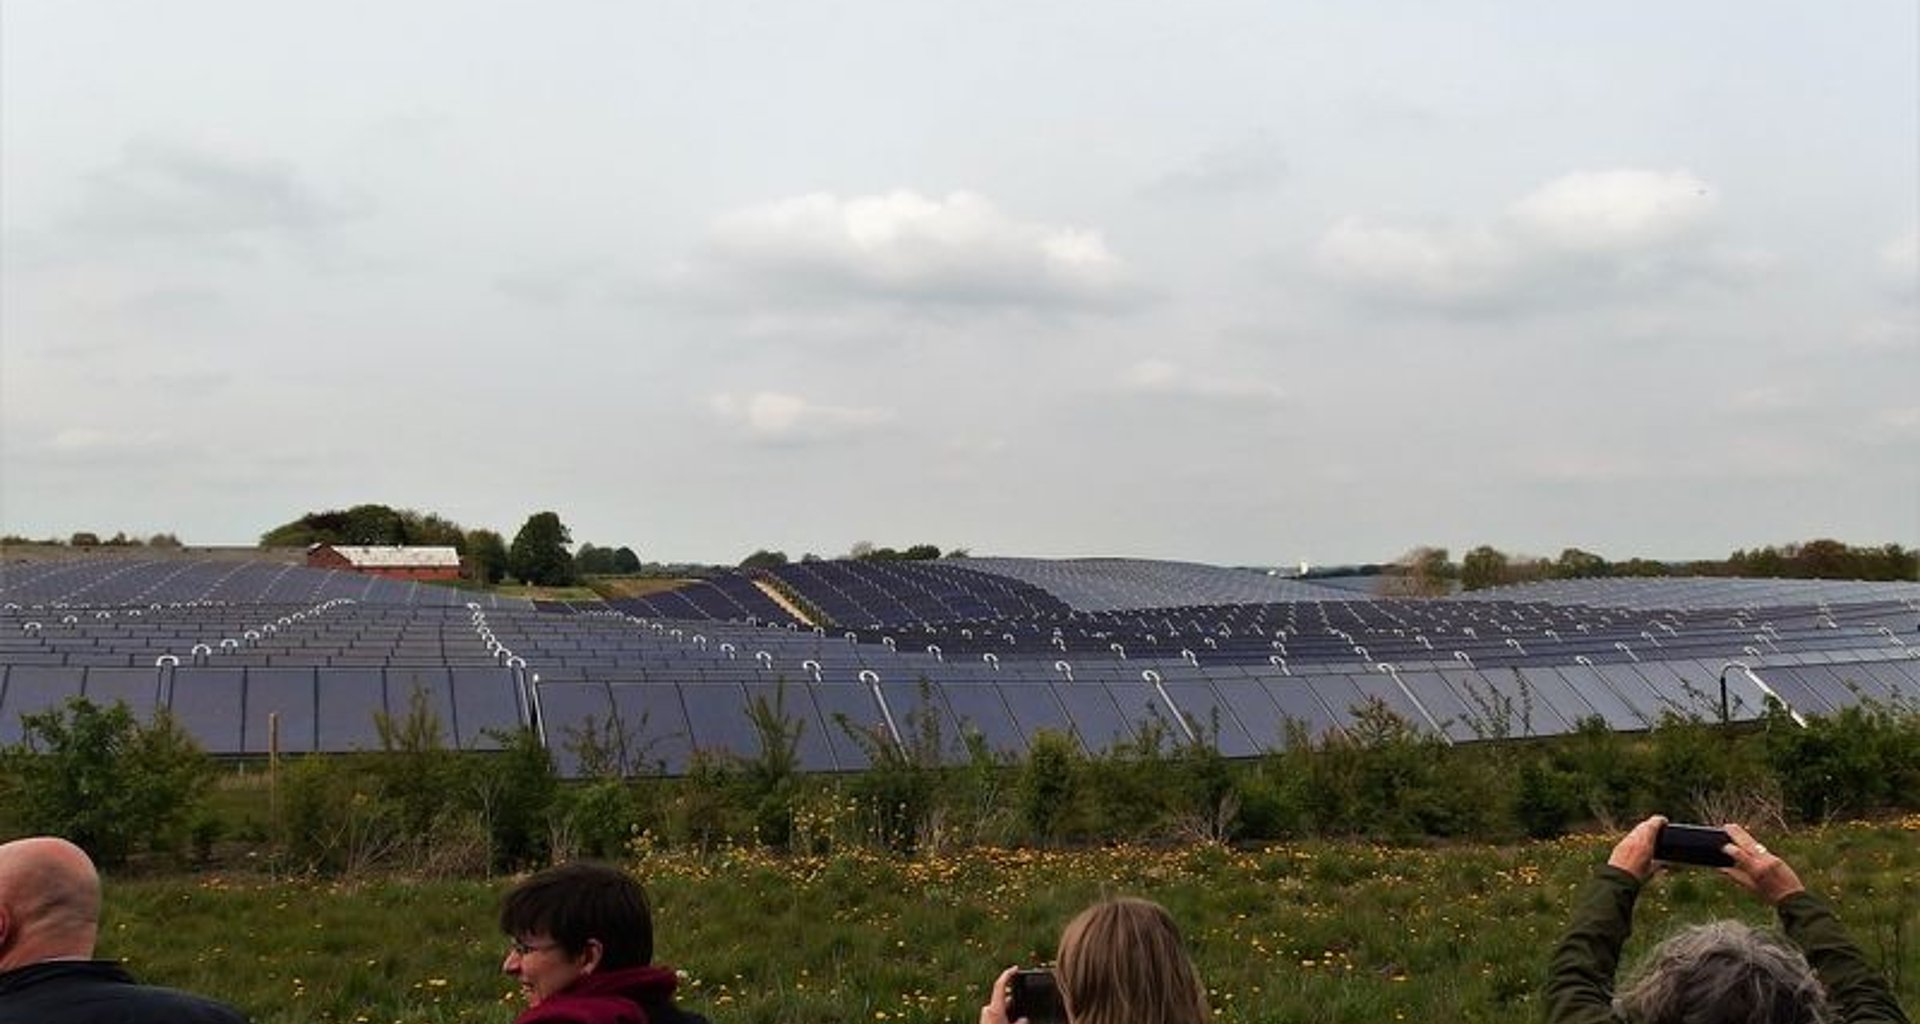 Menschen machen Fotos einer Solaranlagen-Anlage auf einem Feld.